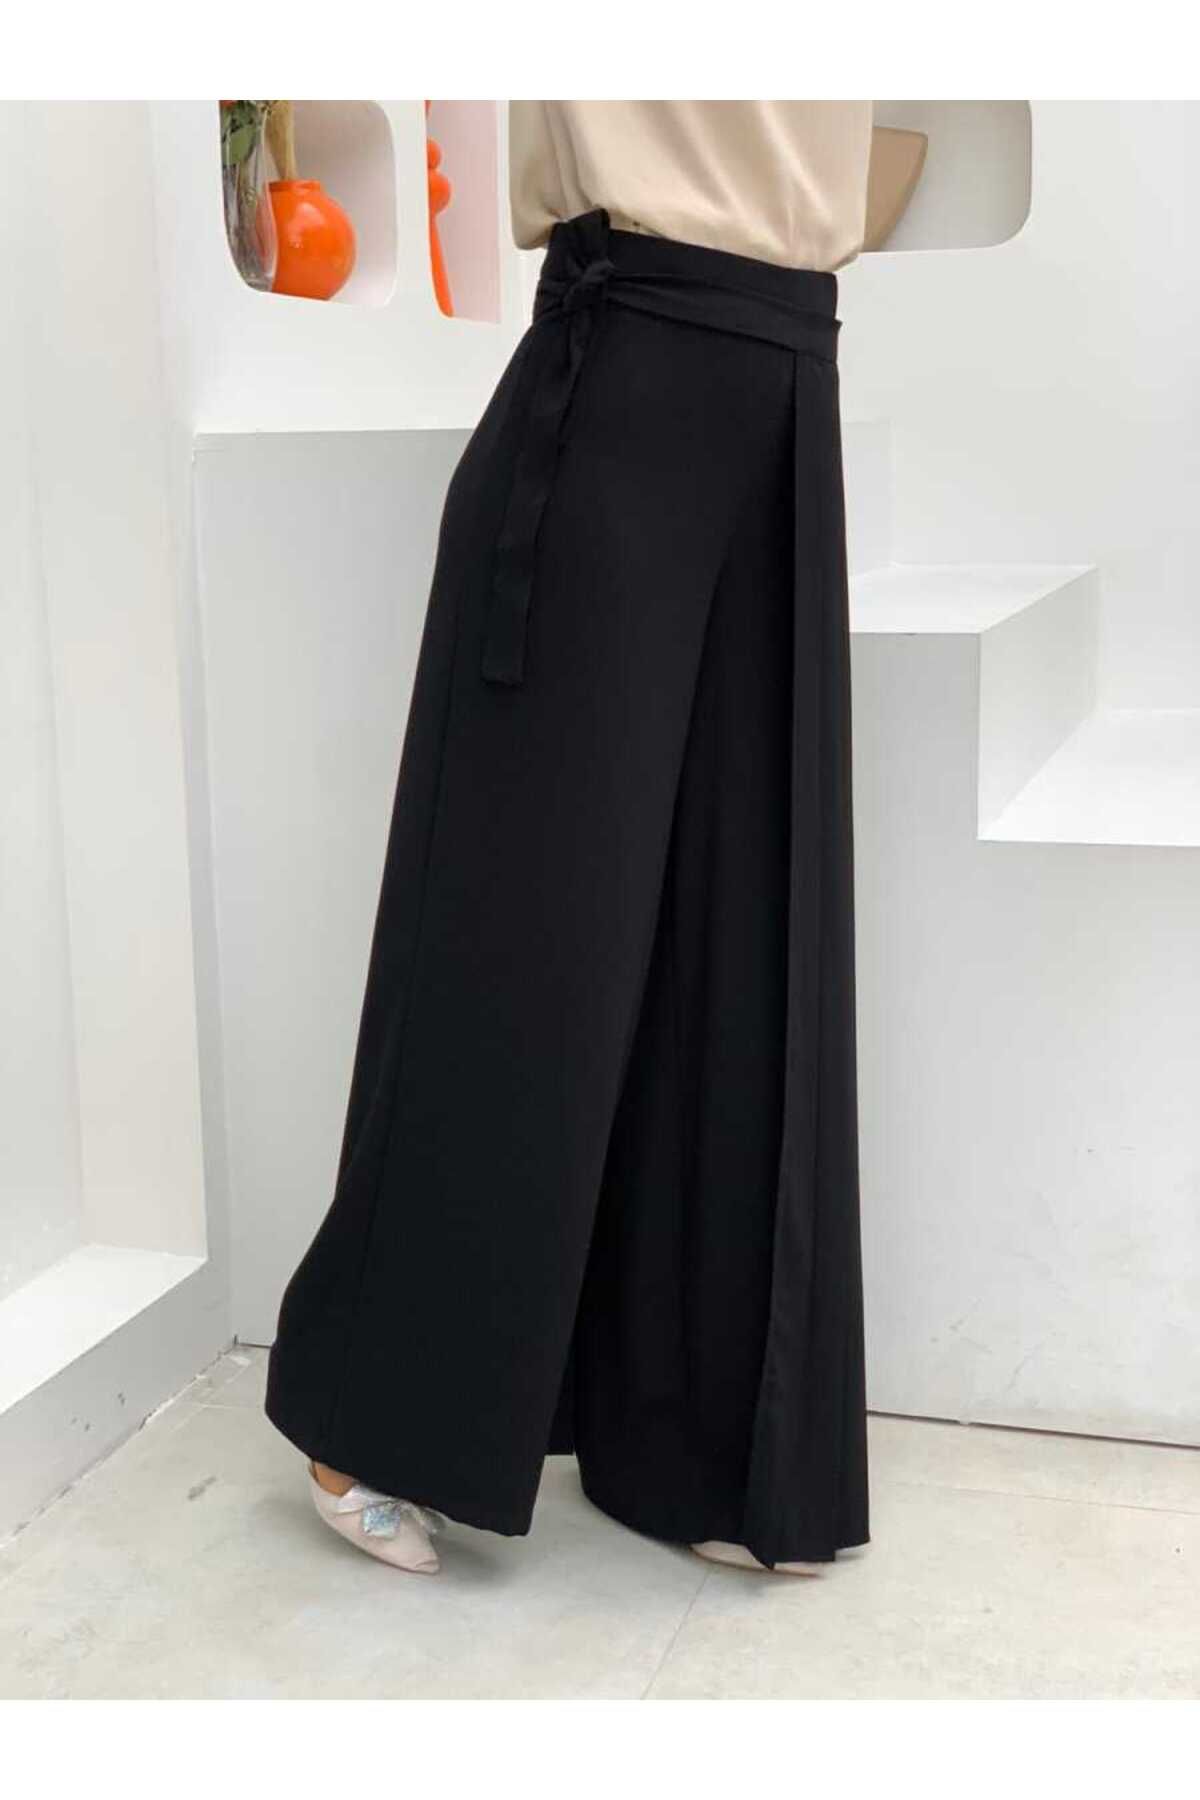 Bym Fashion Piliseli Ayrı Bağlamalı Parça Detaylı Pantolon Etek 0274 Siyah